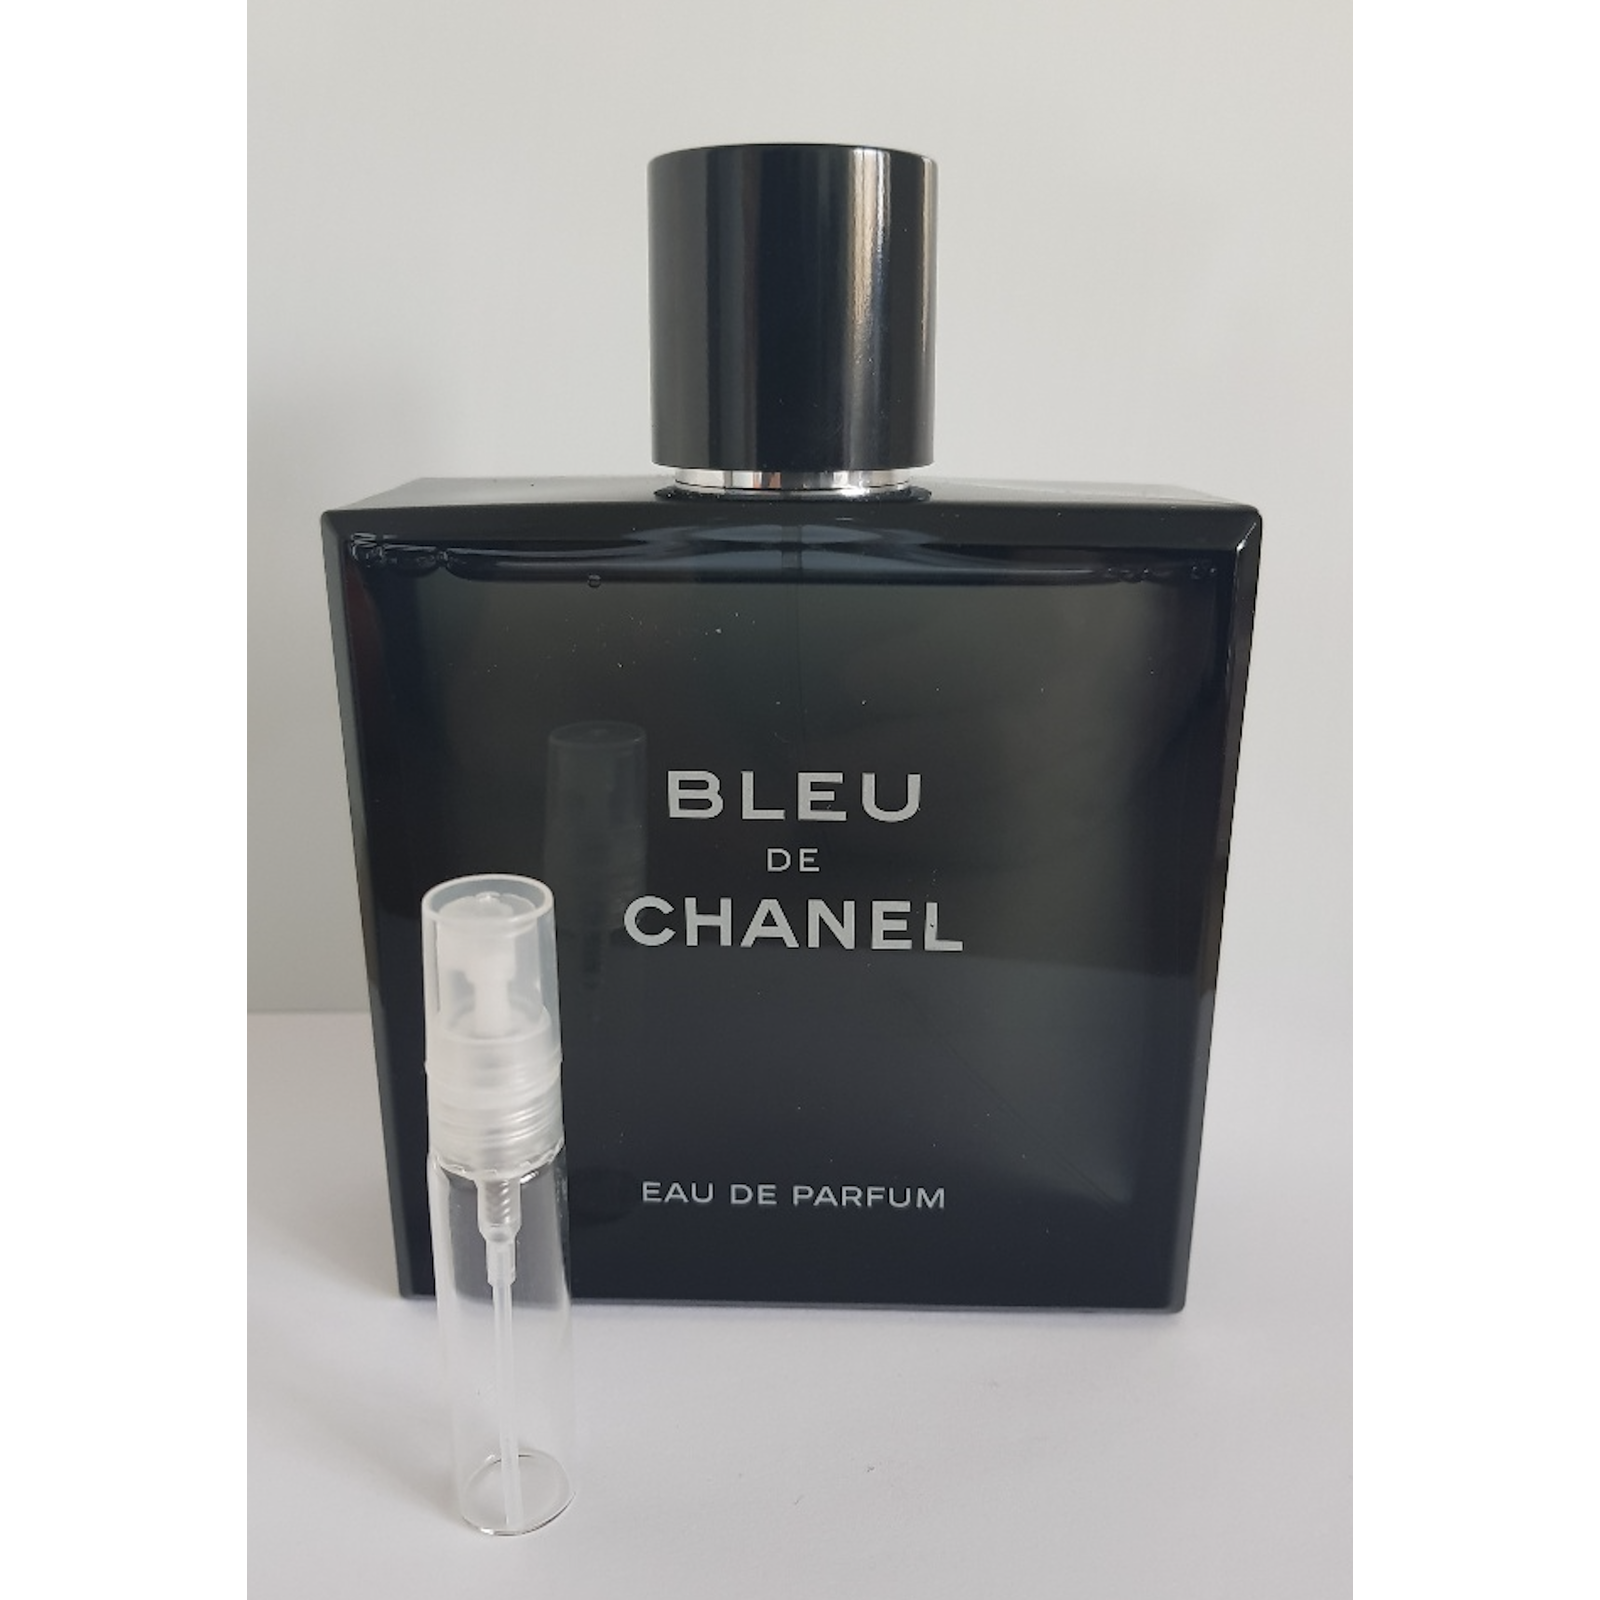 bleu de Chanel eau de parfum pour homme 5ml spray sample